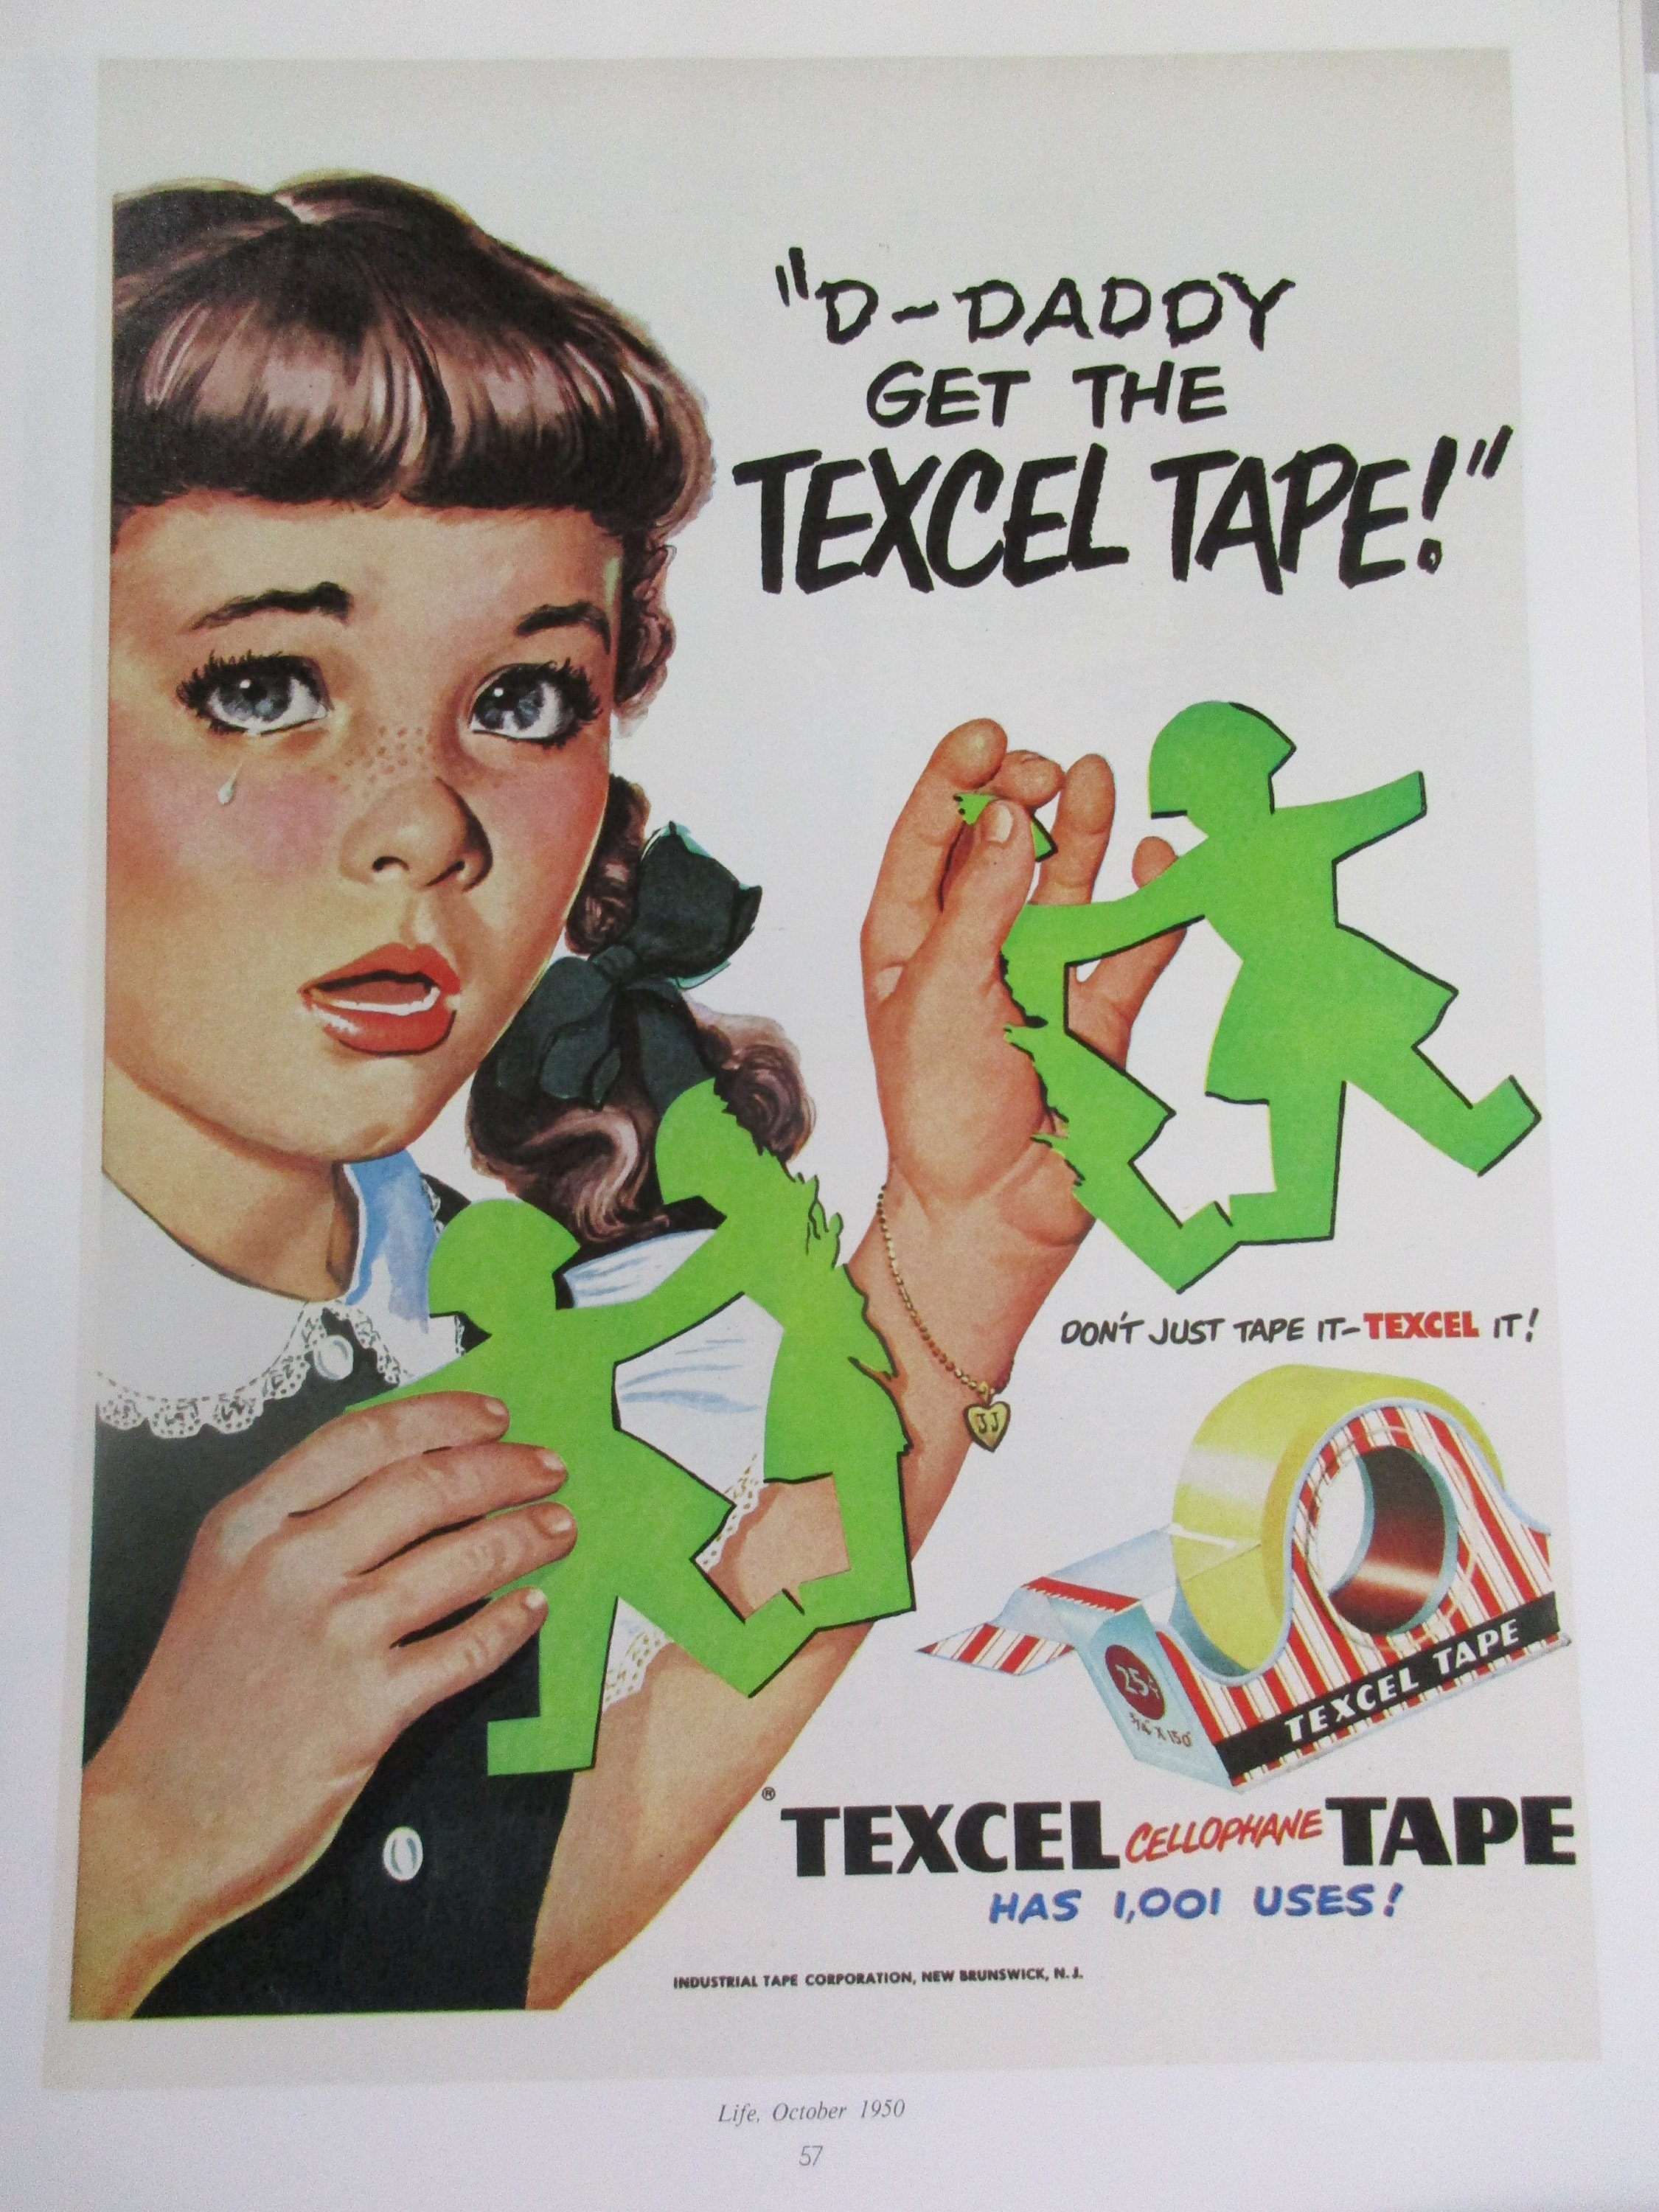 5m Resin Bezel Tape Roll, Bezel Tape, Epoxy Resin Tape, Resin Pour, UV Tape,  Jewellery Making, Bezels, Plastic Tape, Frame Tape, Supplies 